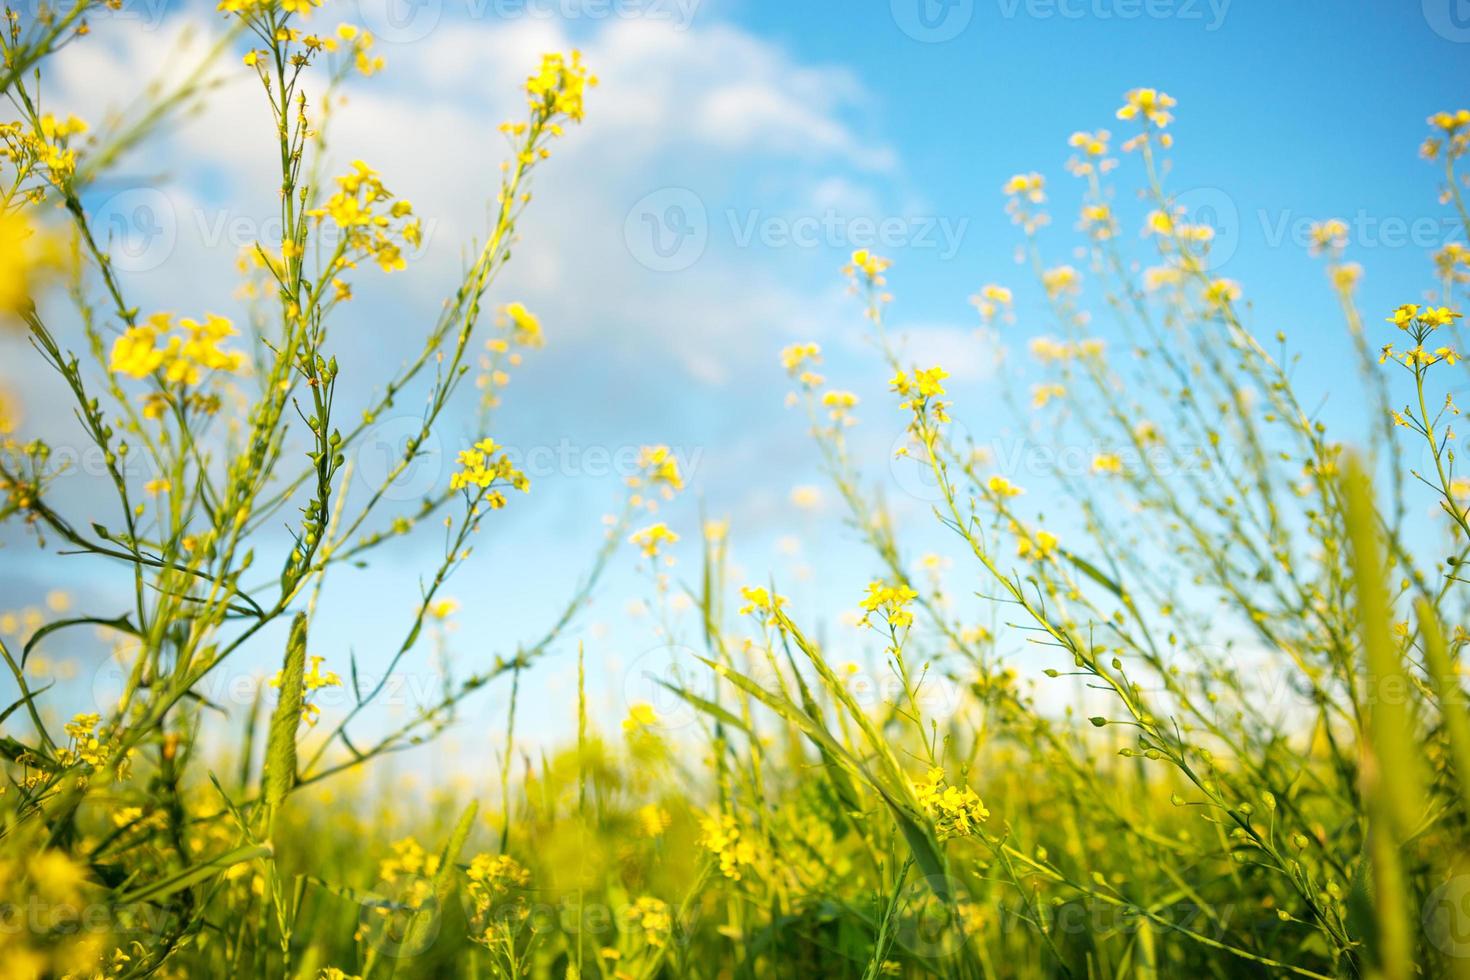 gula vildblommor av raps, bovete på sommaren mot en blå himmel. sommartid, vår, blomning, doft. odling av naturligt jordbruk. solig bakgrund, frihet, lugn. foto